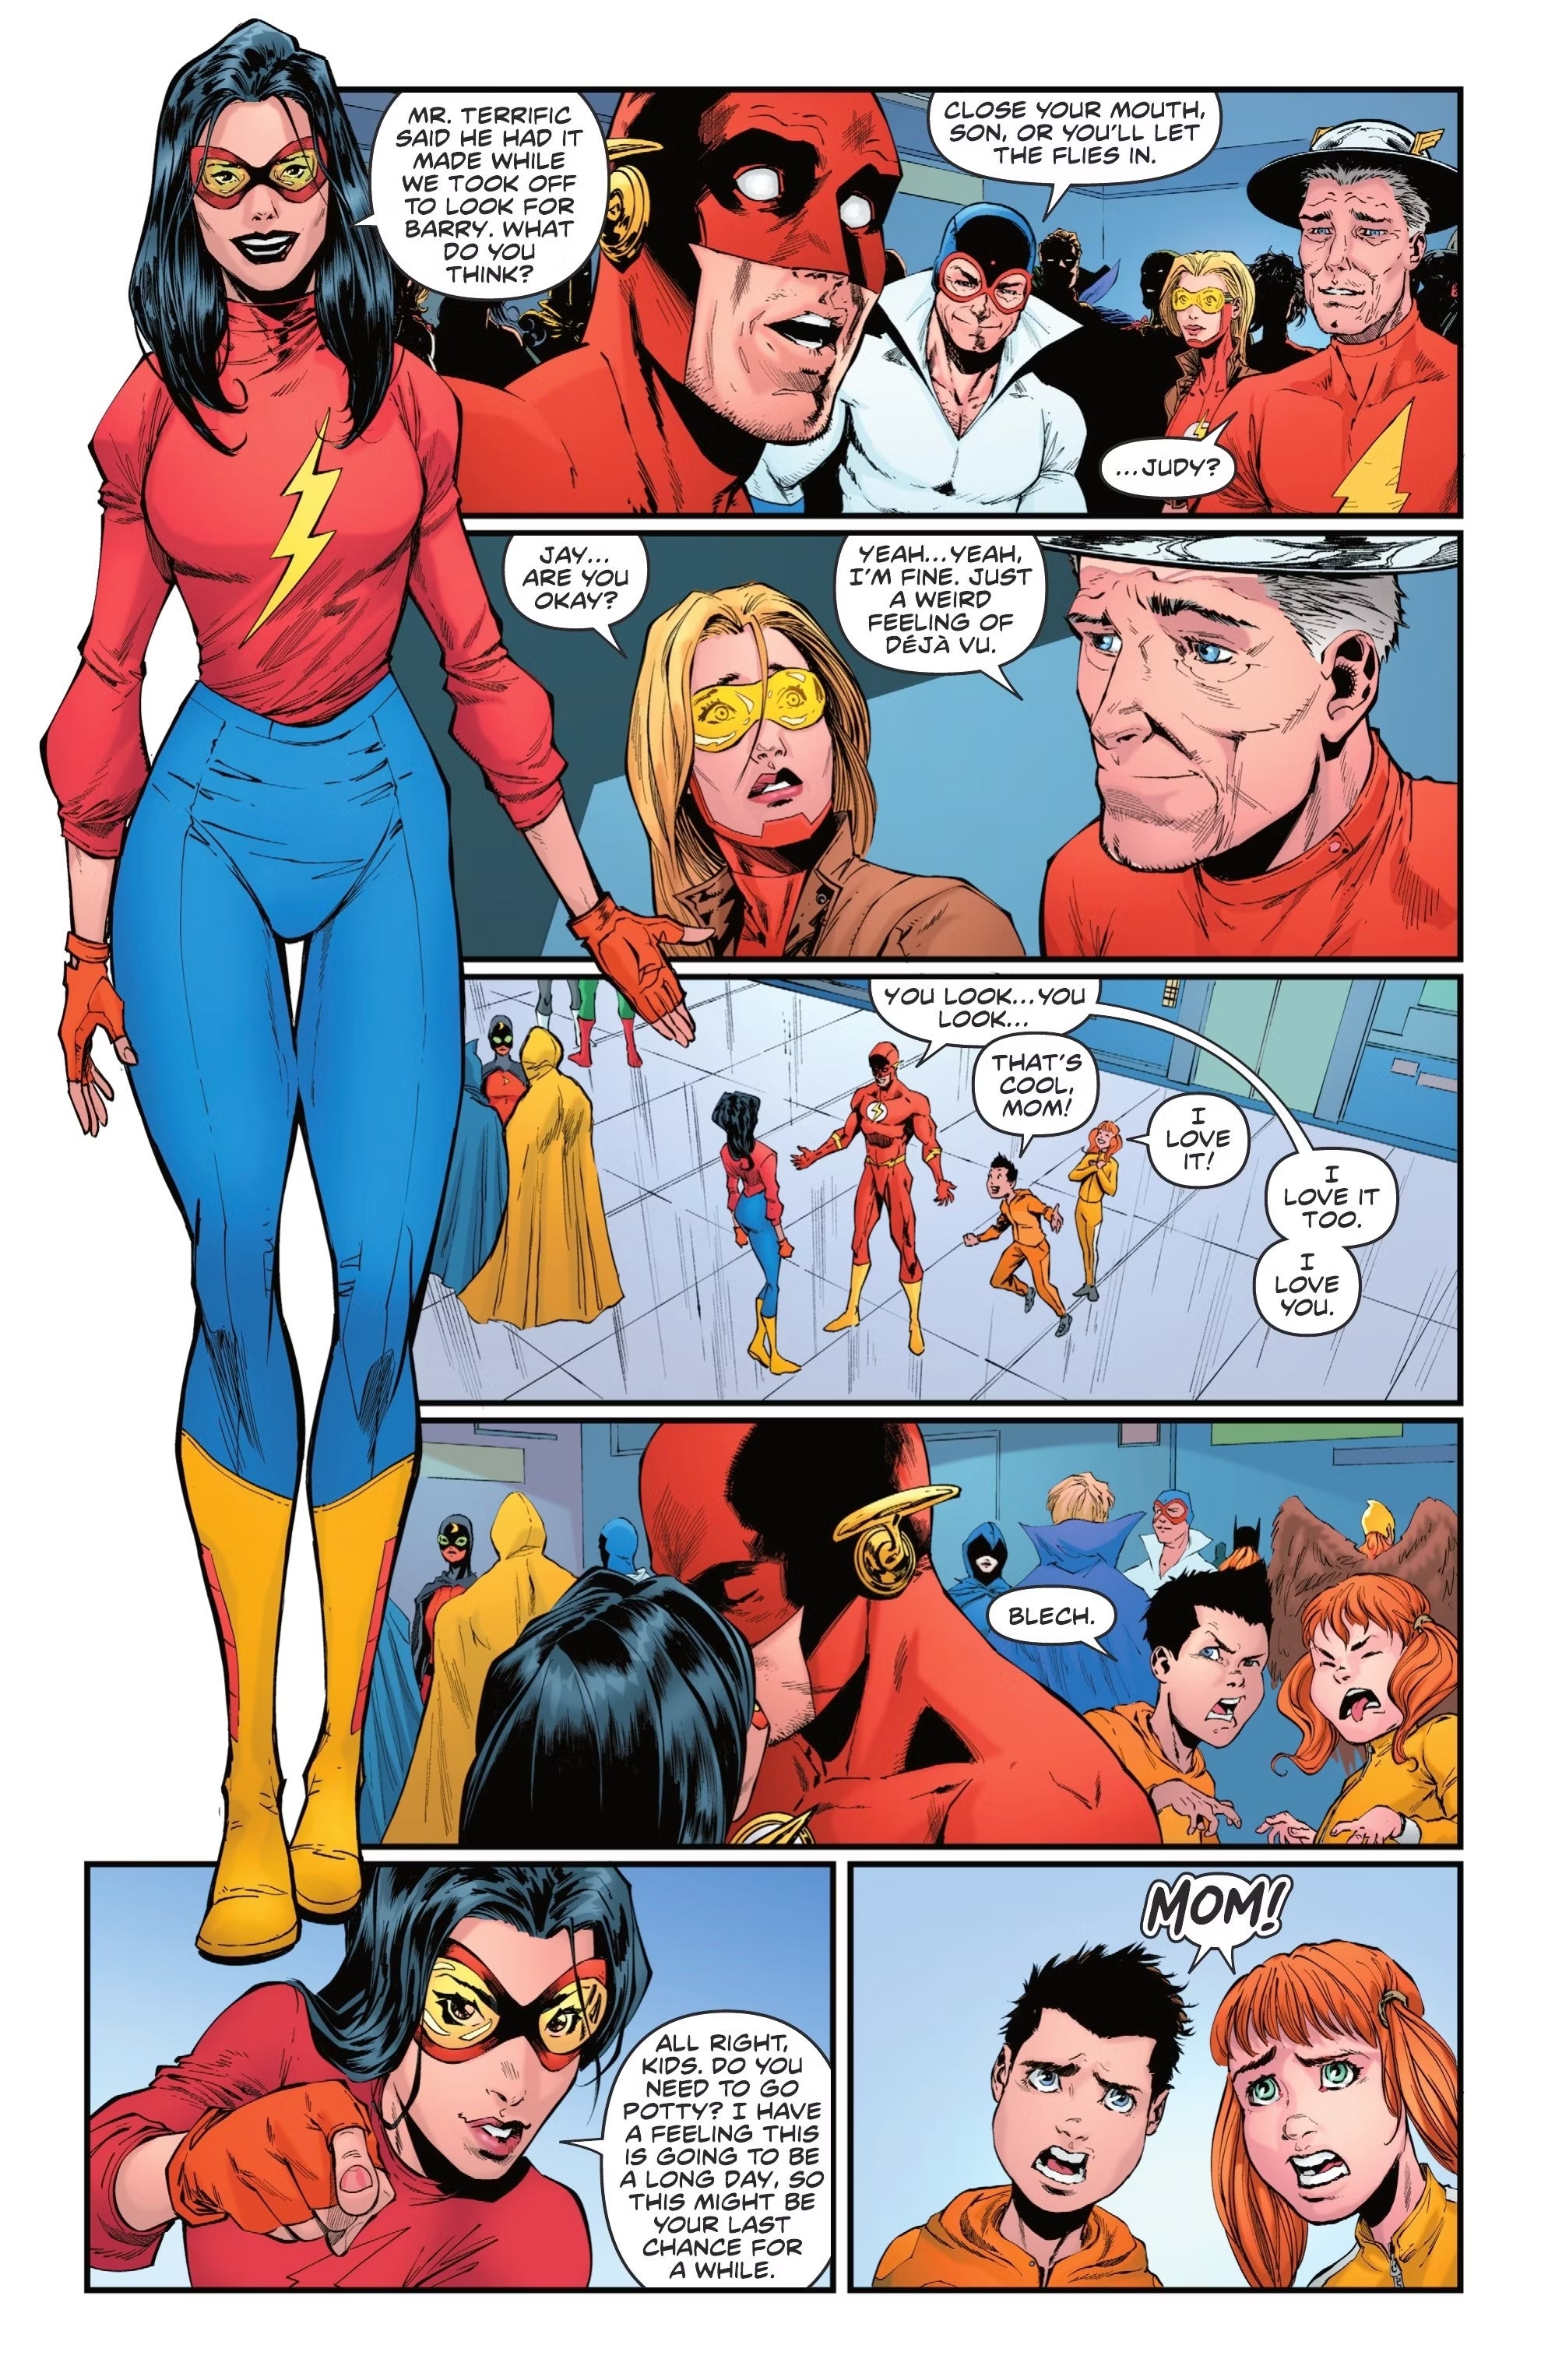 Linda unveils her superhero costume